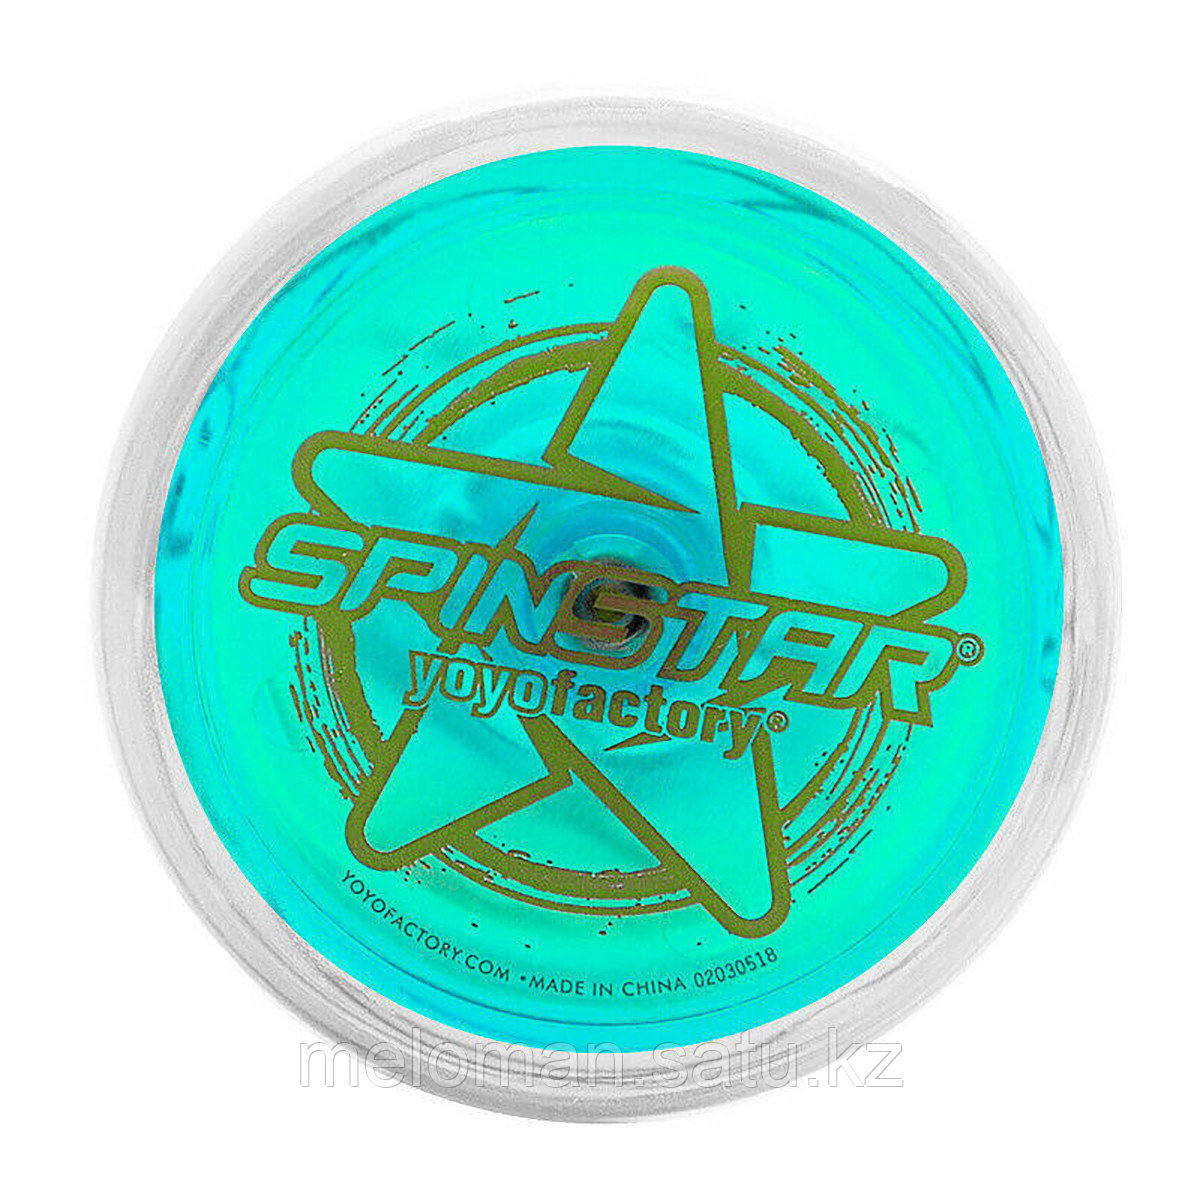 YoYoFactory: SpinStar Голубой